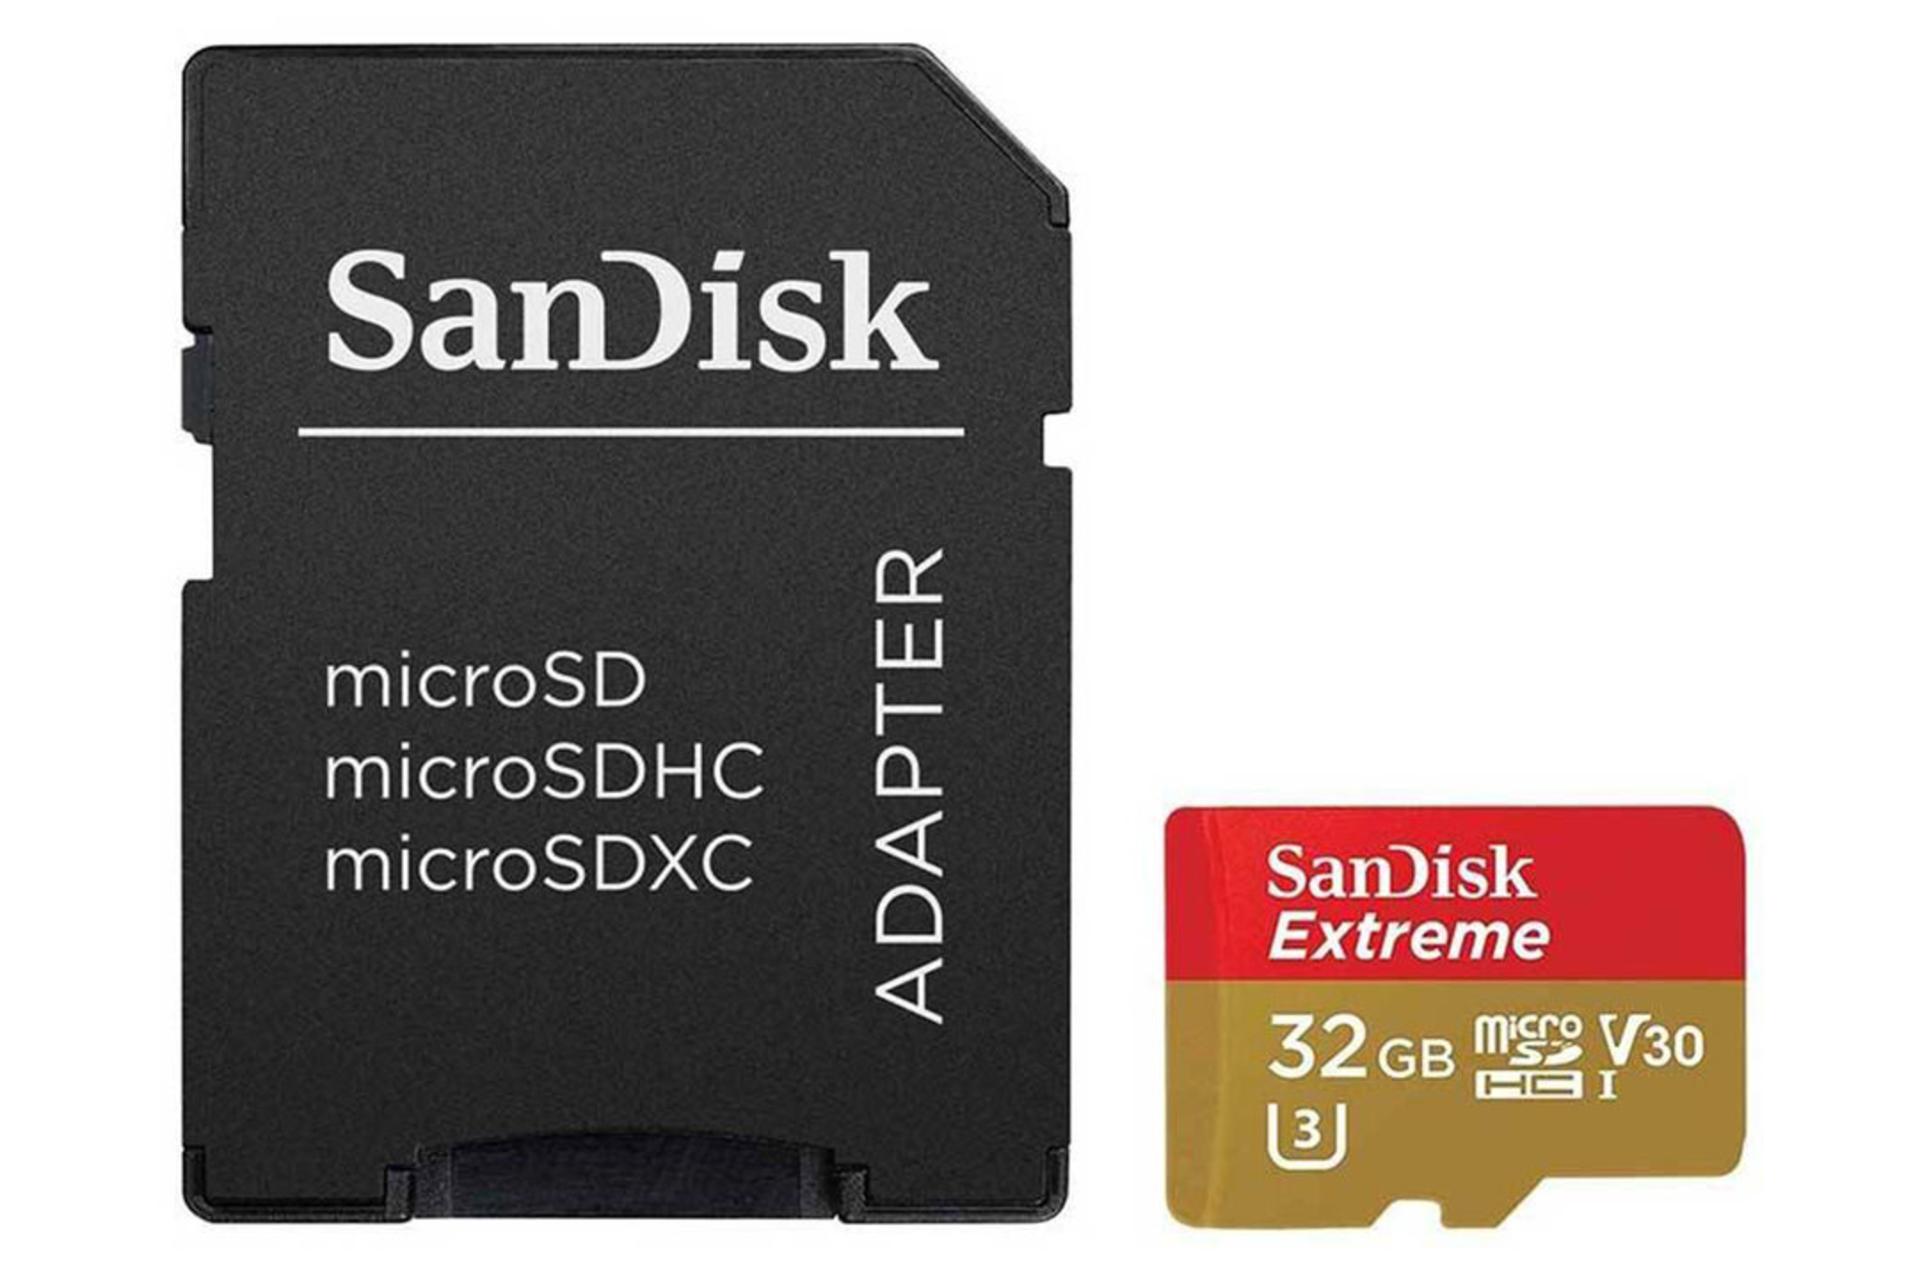 SanDisk Extreme V30 SDHC Class 10 UHS-I U3 32GB